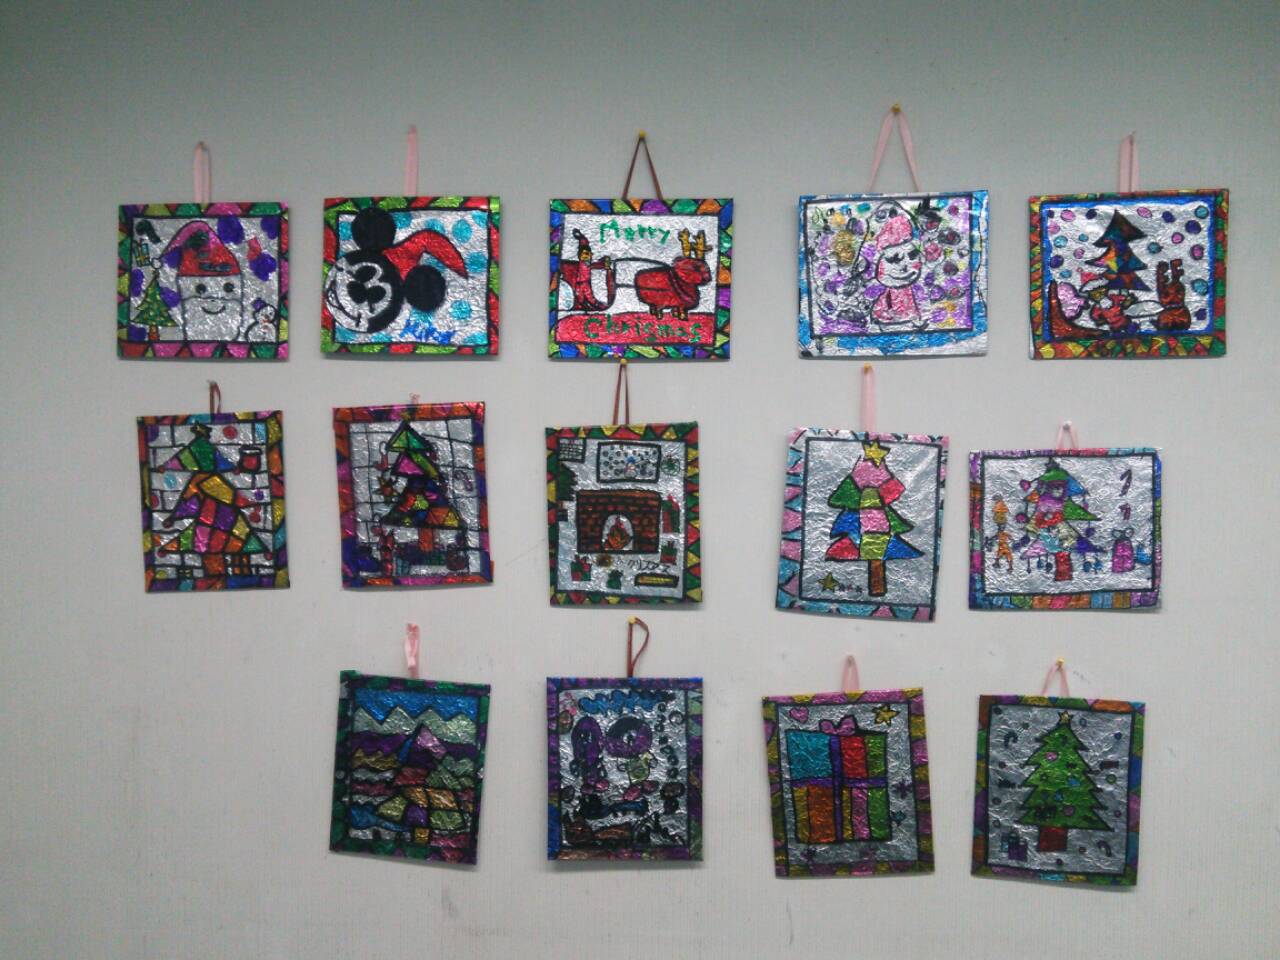 クリスマス会 工作 けいはんな 光台教室 あすなろ絵画研究所 元気な子ども達と絵を描いたり 工作をしたり とても楽しいお絵かき教室です